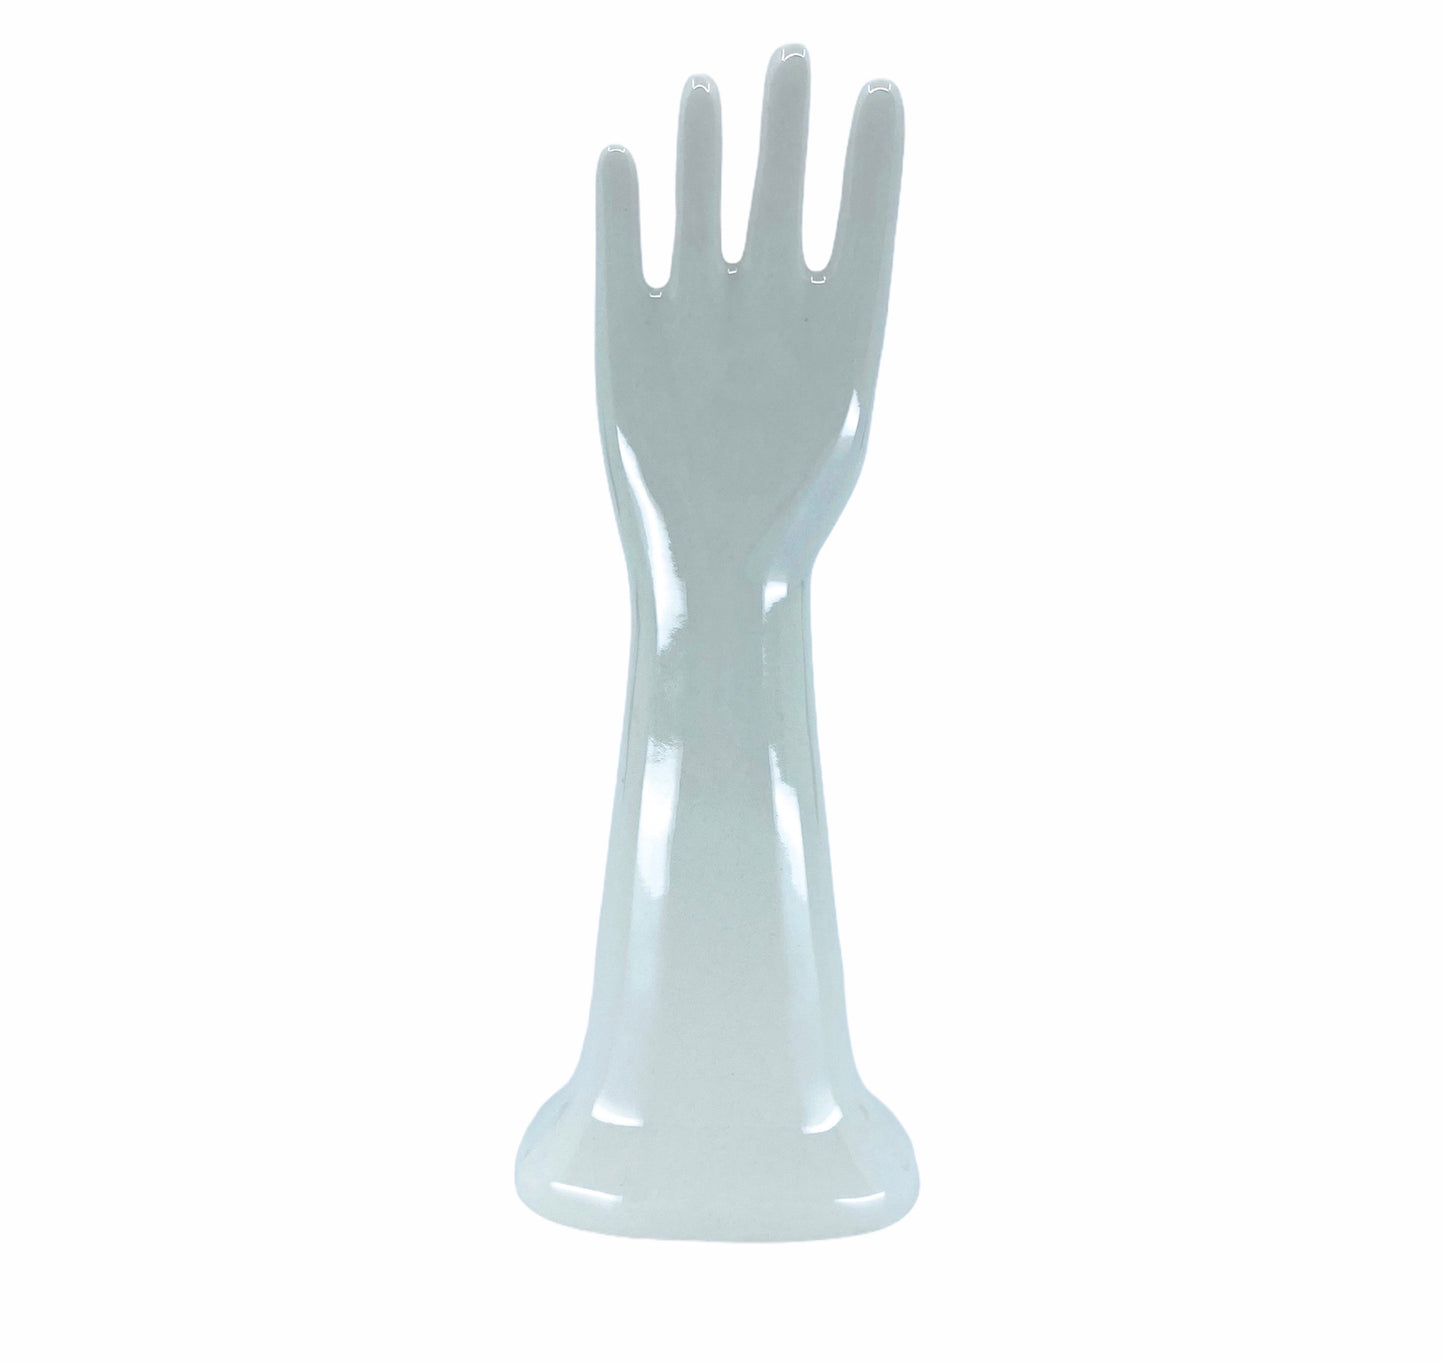 Fishs Eddy “Tall Mini” Ceramic Hand